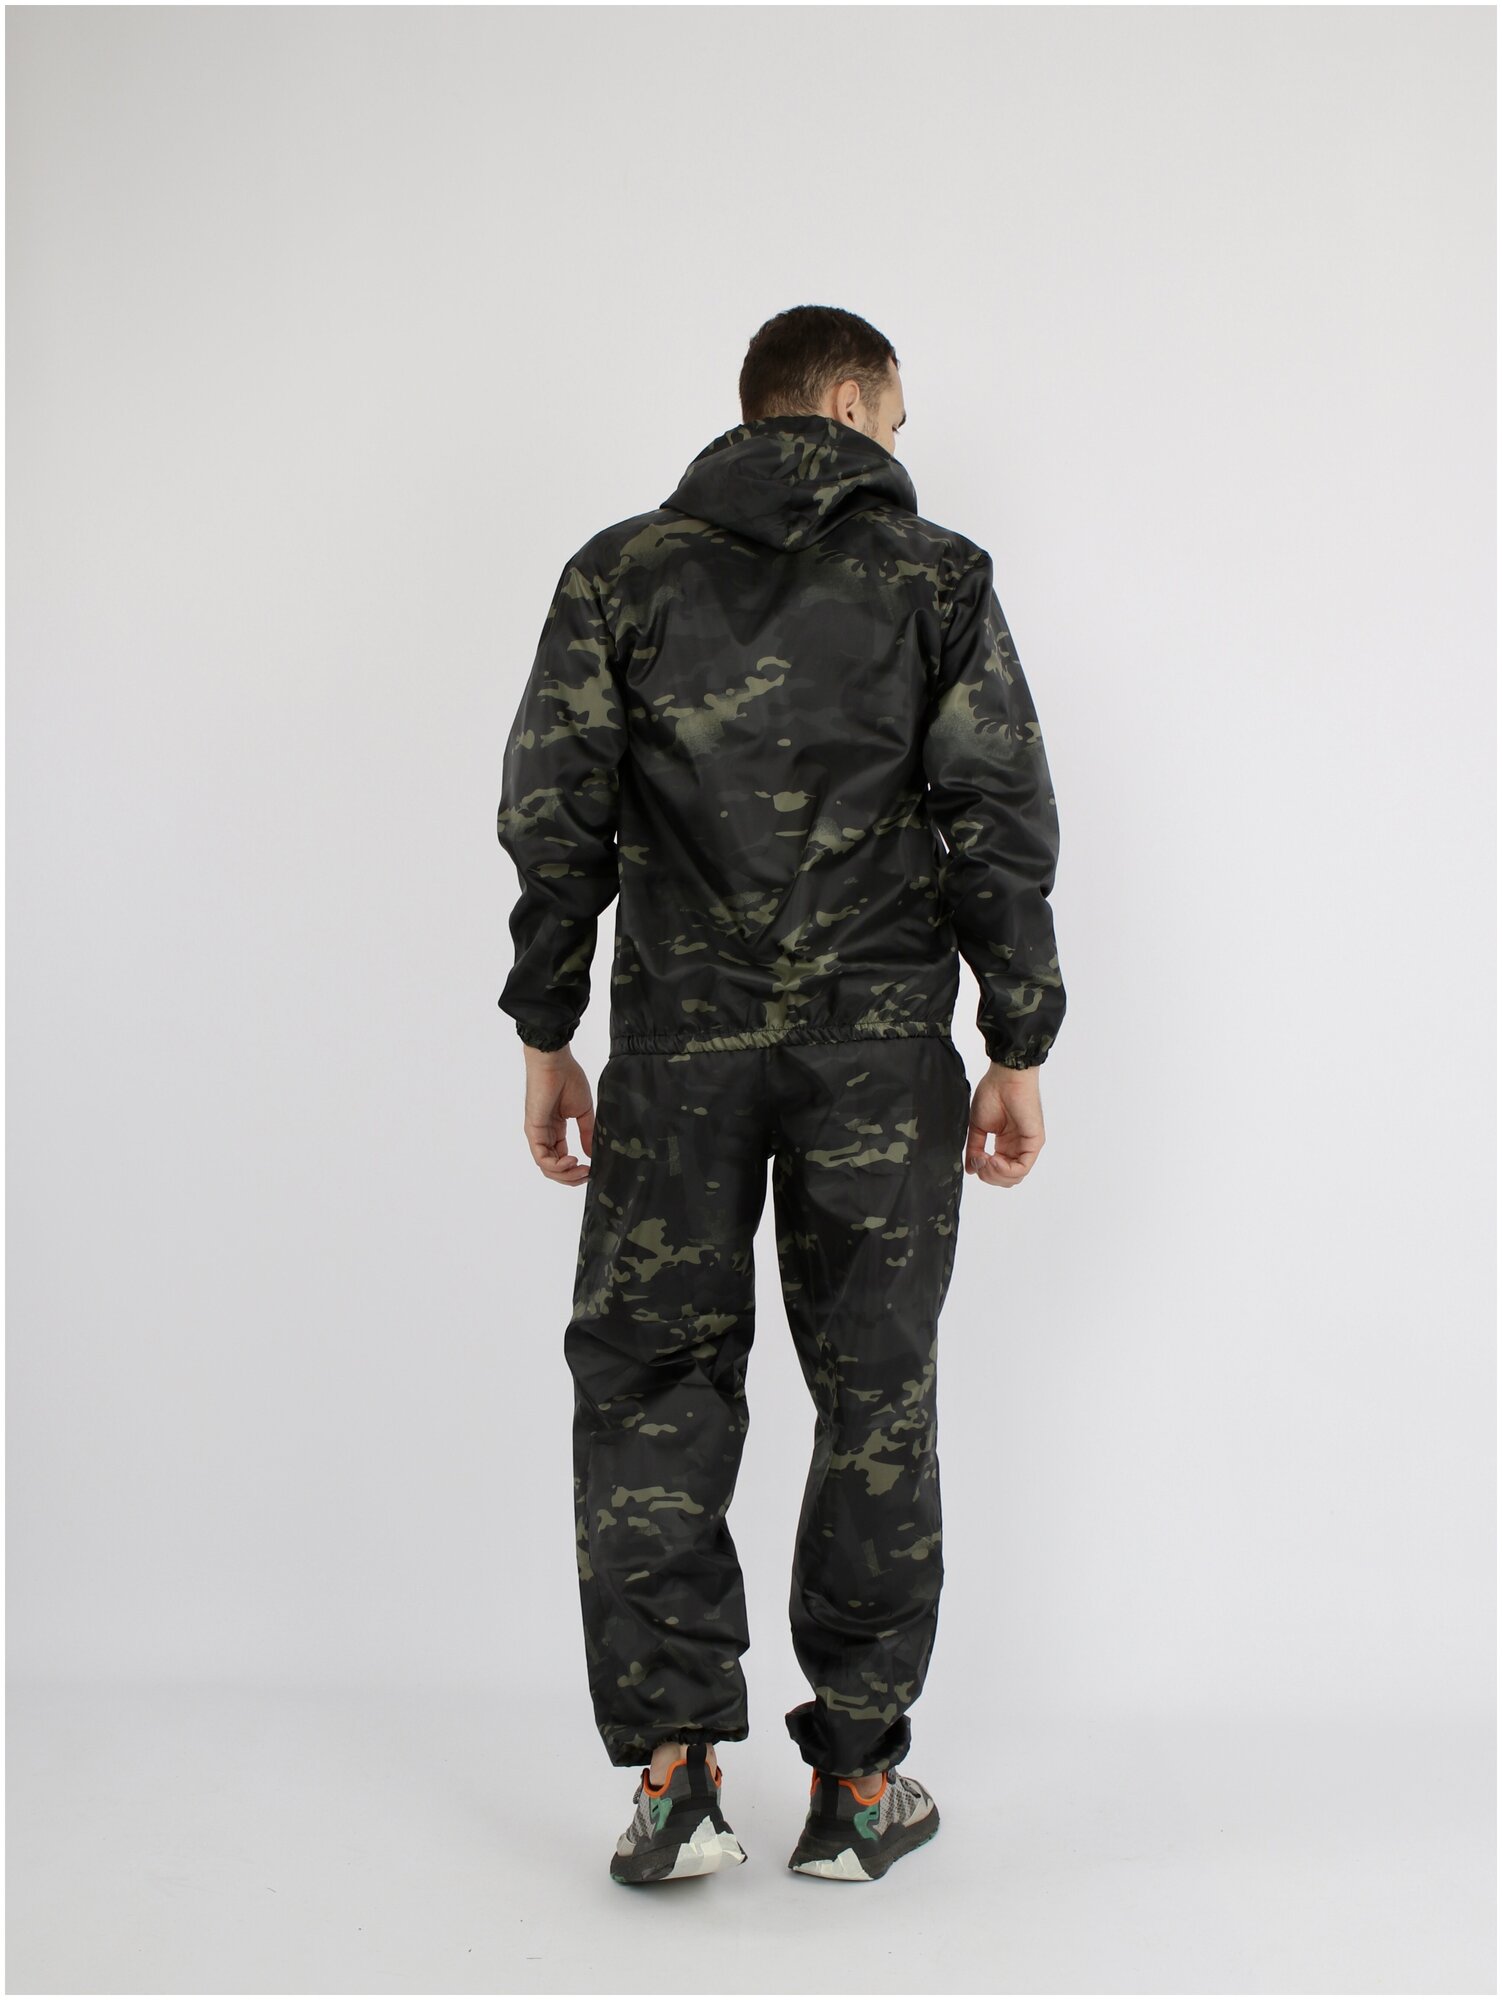 Ветровлагозащитный костюм для активного отдыха Prival, р-р 56-58, рост 182-188, чёрный + защитная расцветка НАТО